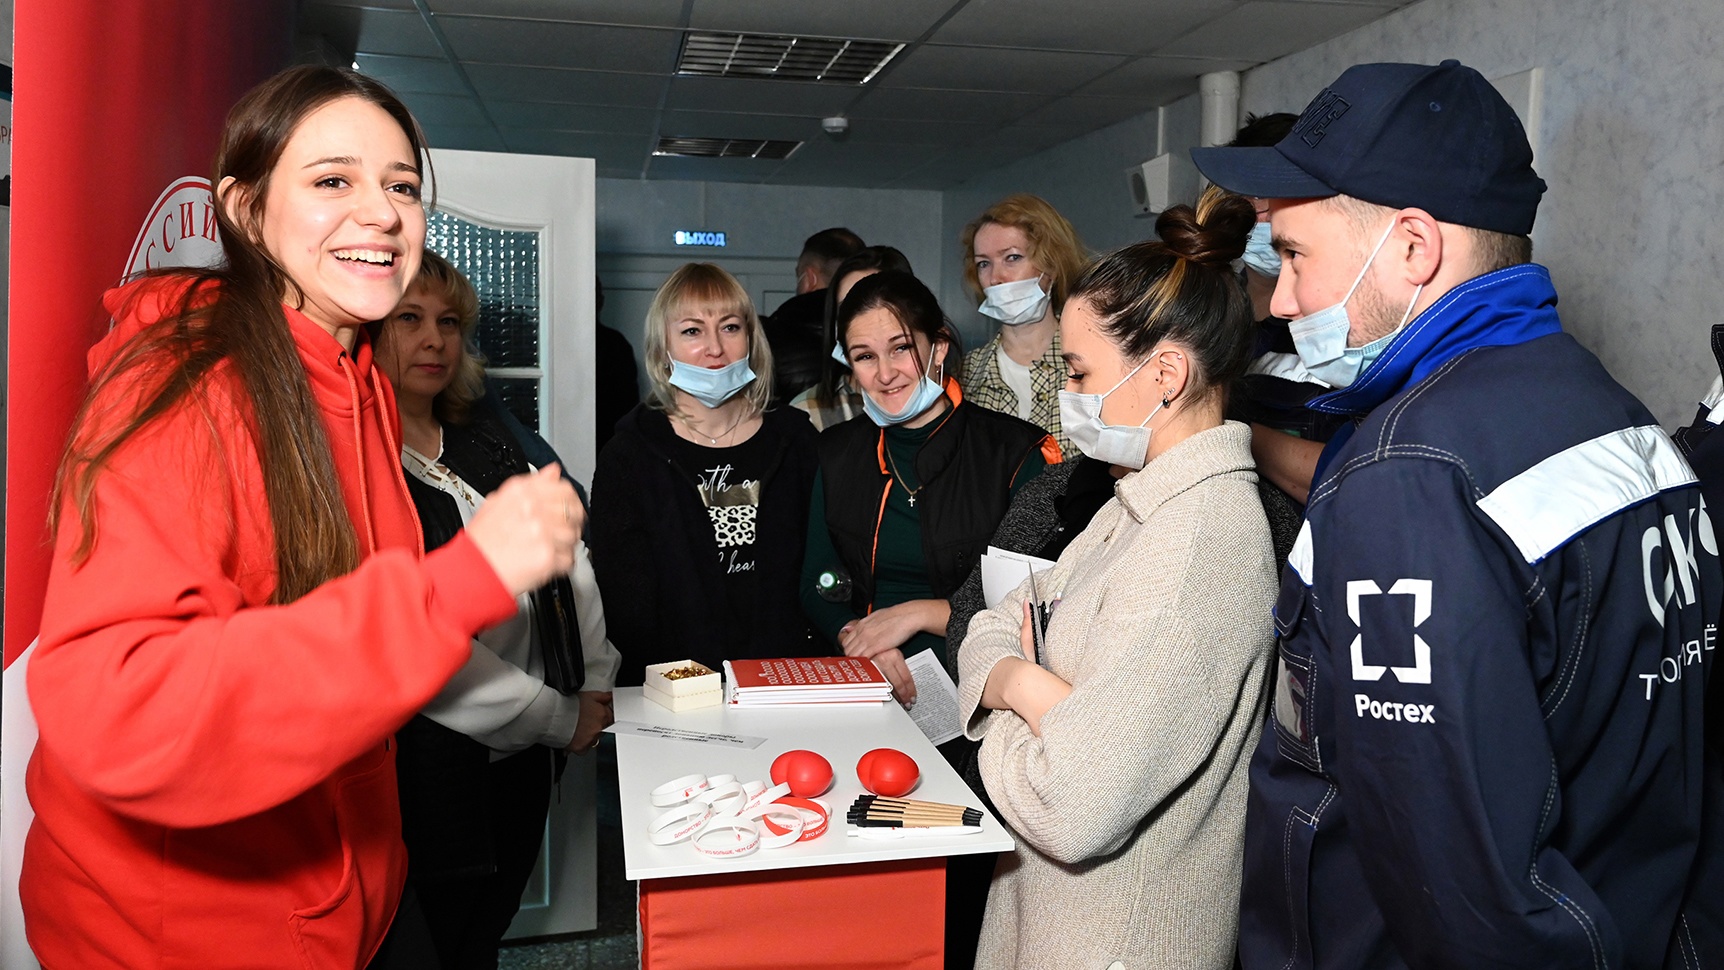 В филиале ульяновского авиазавода  прошел первый в этом году День донора.